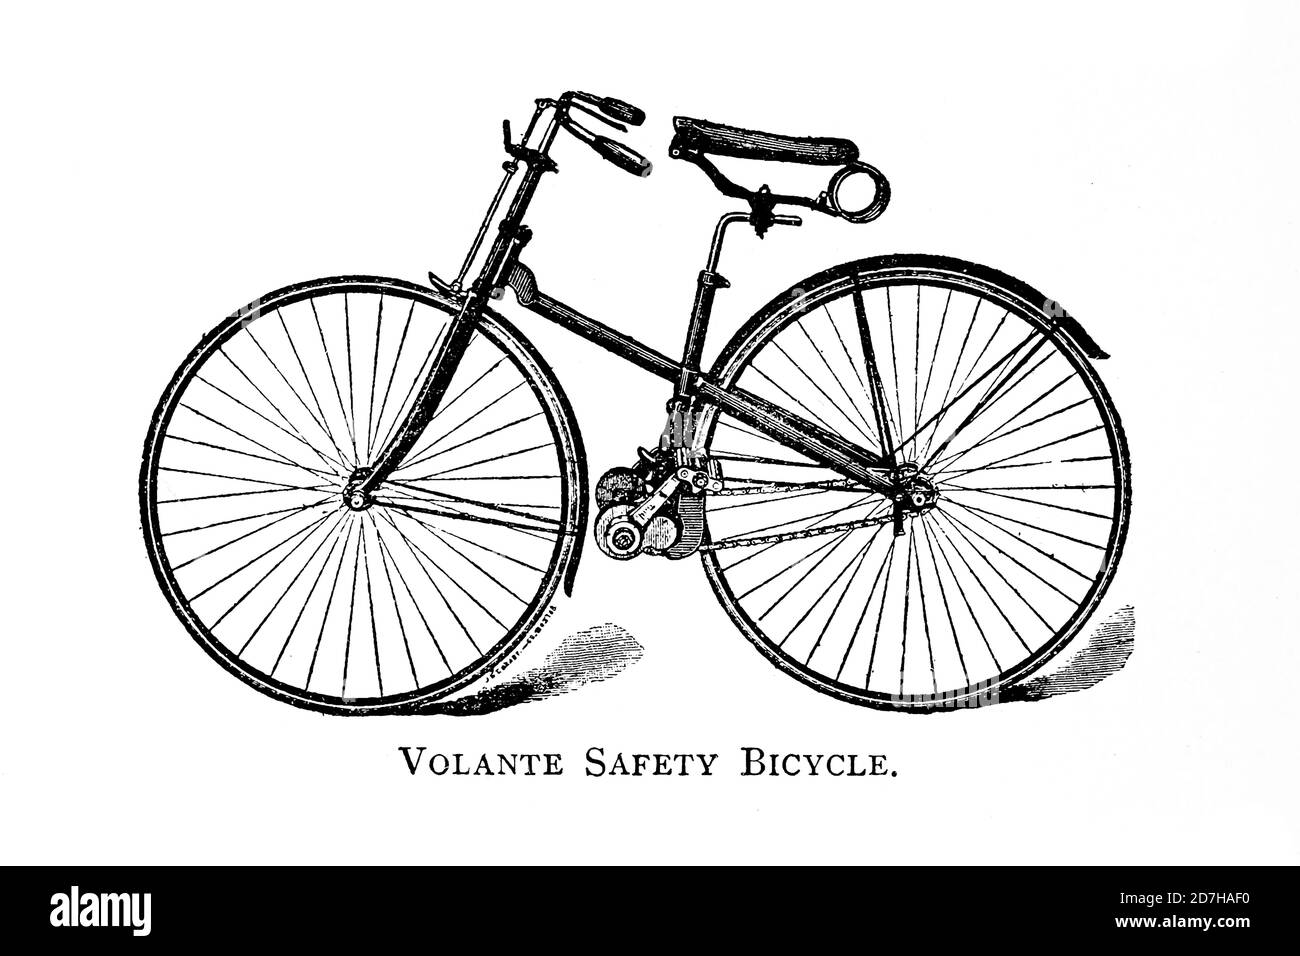 Vélo de sécurité Volante de Wheeling, un manuel indispensable pour les cyclistes, avec plus de deux cents illustrations de porter, Luther Henry. Banque D'Images